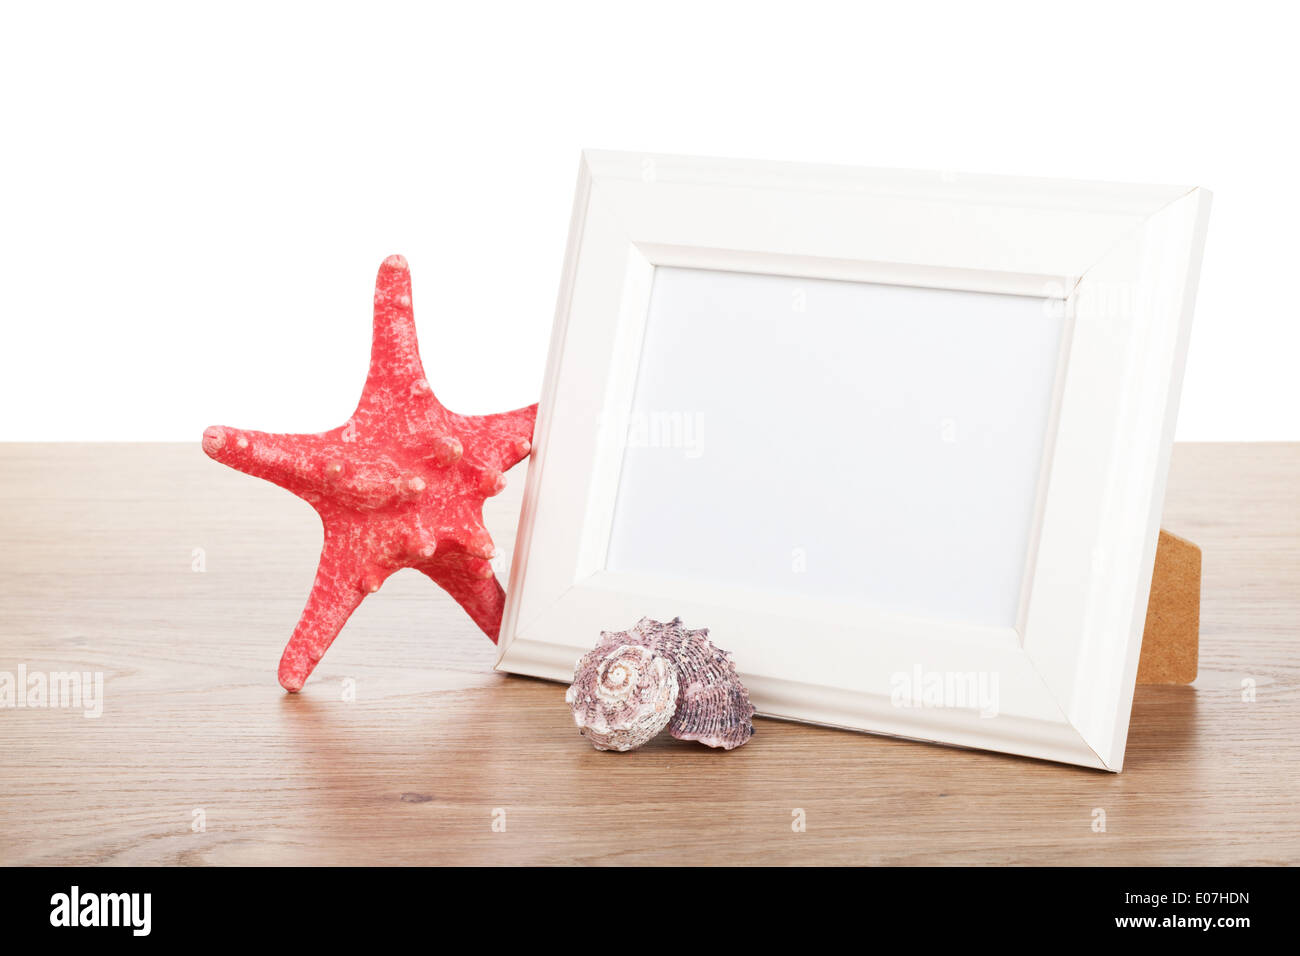 Cadre photo, starfish et seashell sur table en bois Banque D'Images